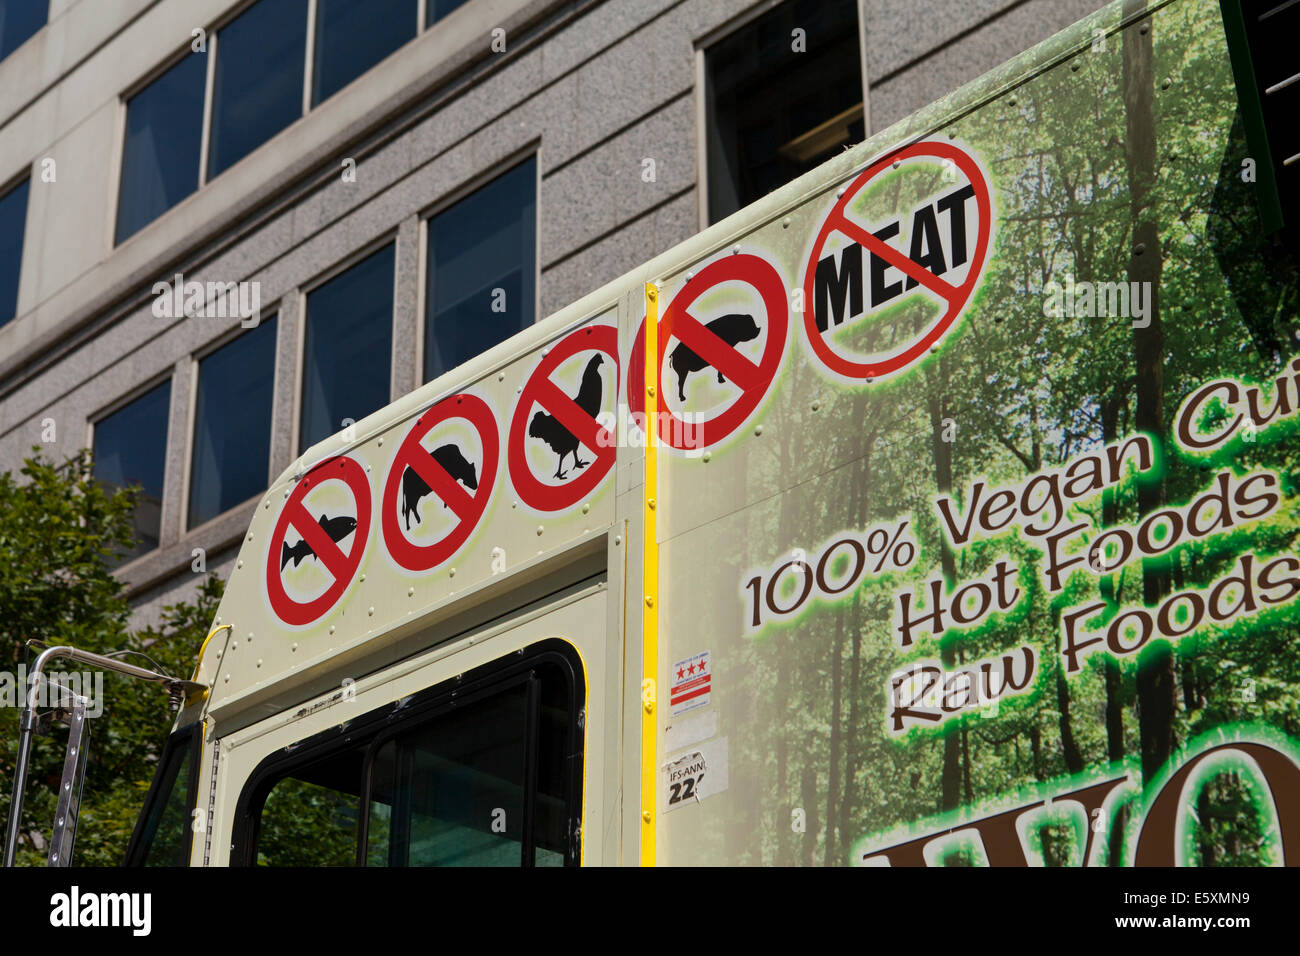 No hay signos de carne en la alimentación vegetariana camión - Washington, DC, EE.UU. Foto de stock